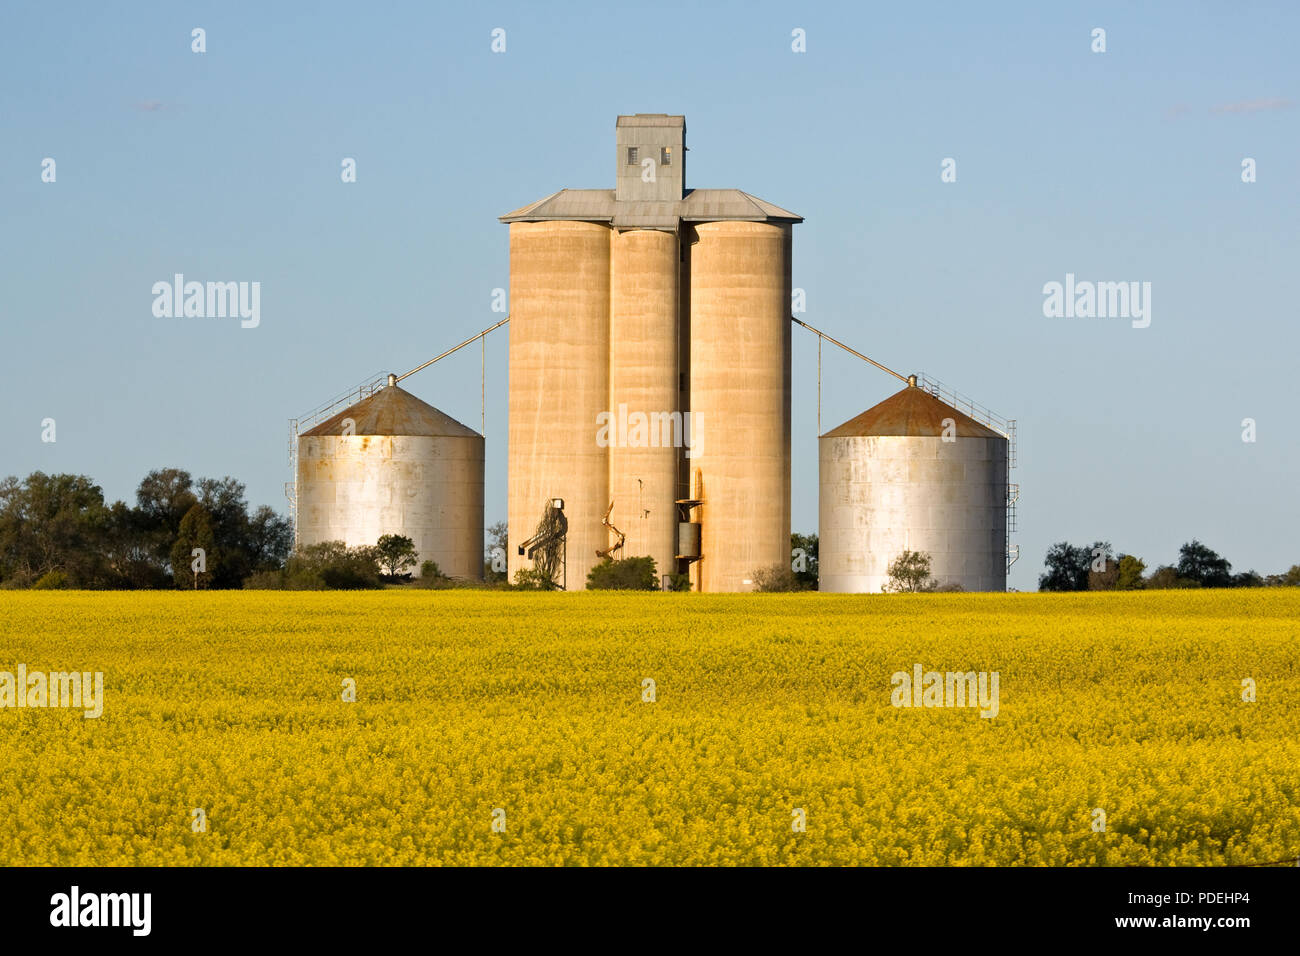 Silo élévateur à grain, région de Wimmera Victoria Australie. Banque D'Images